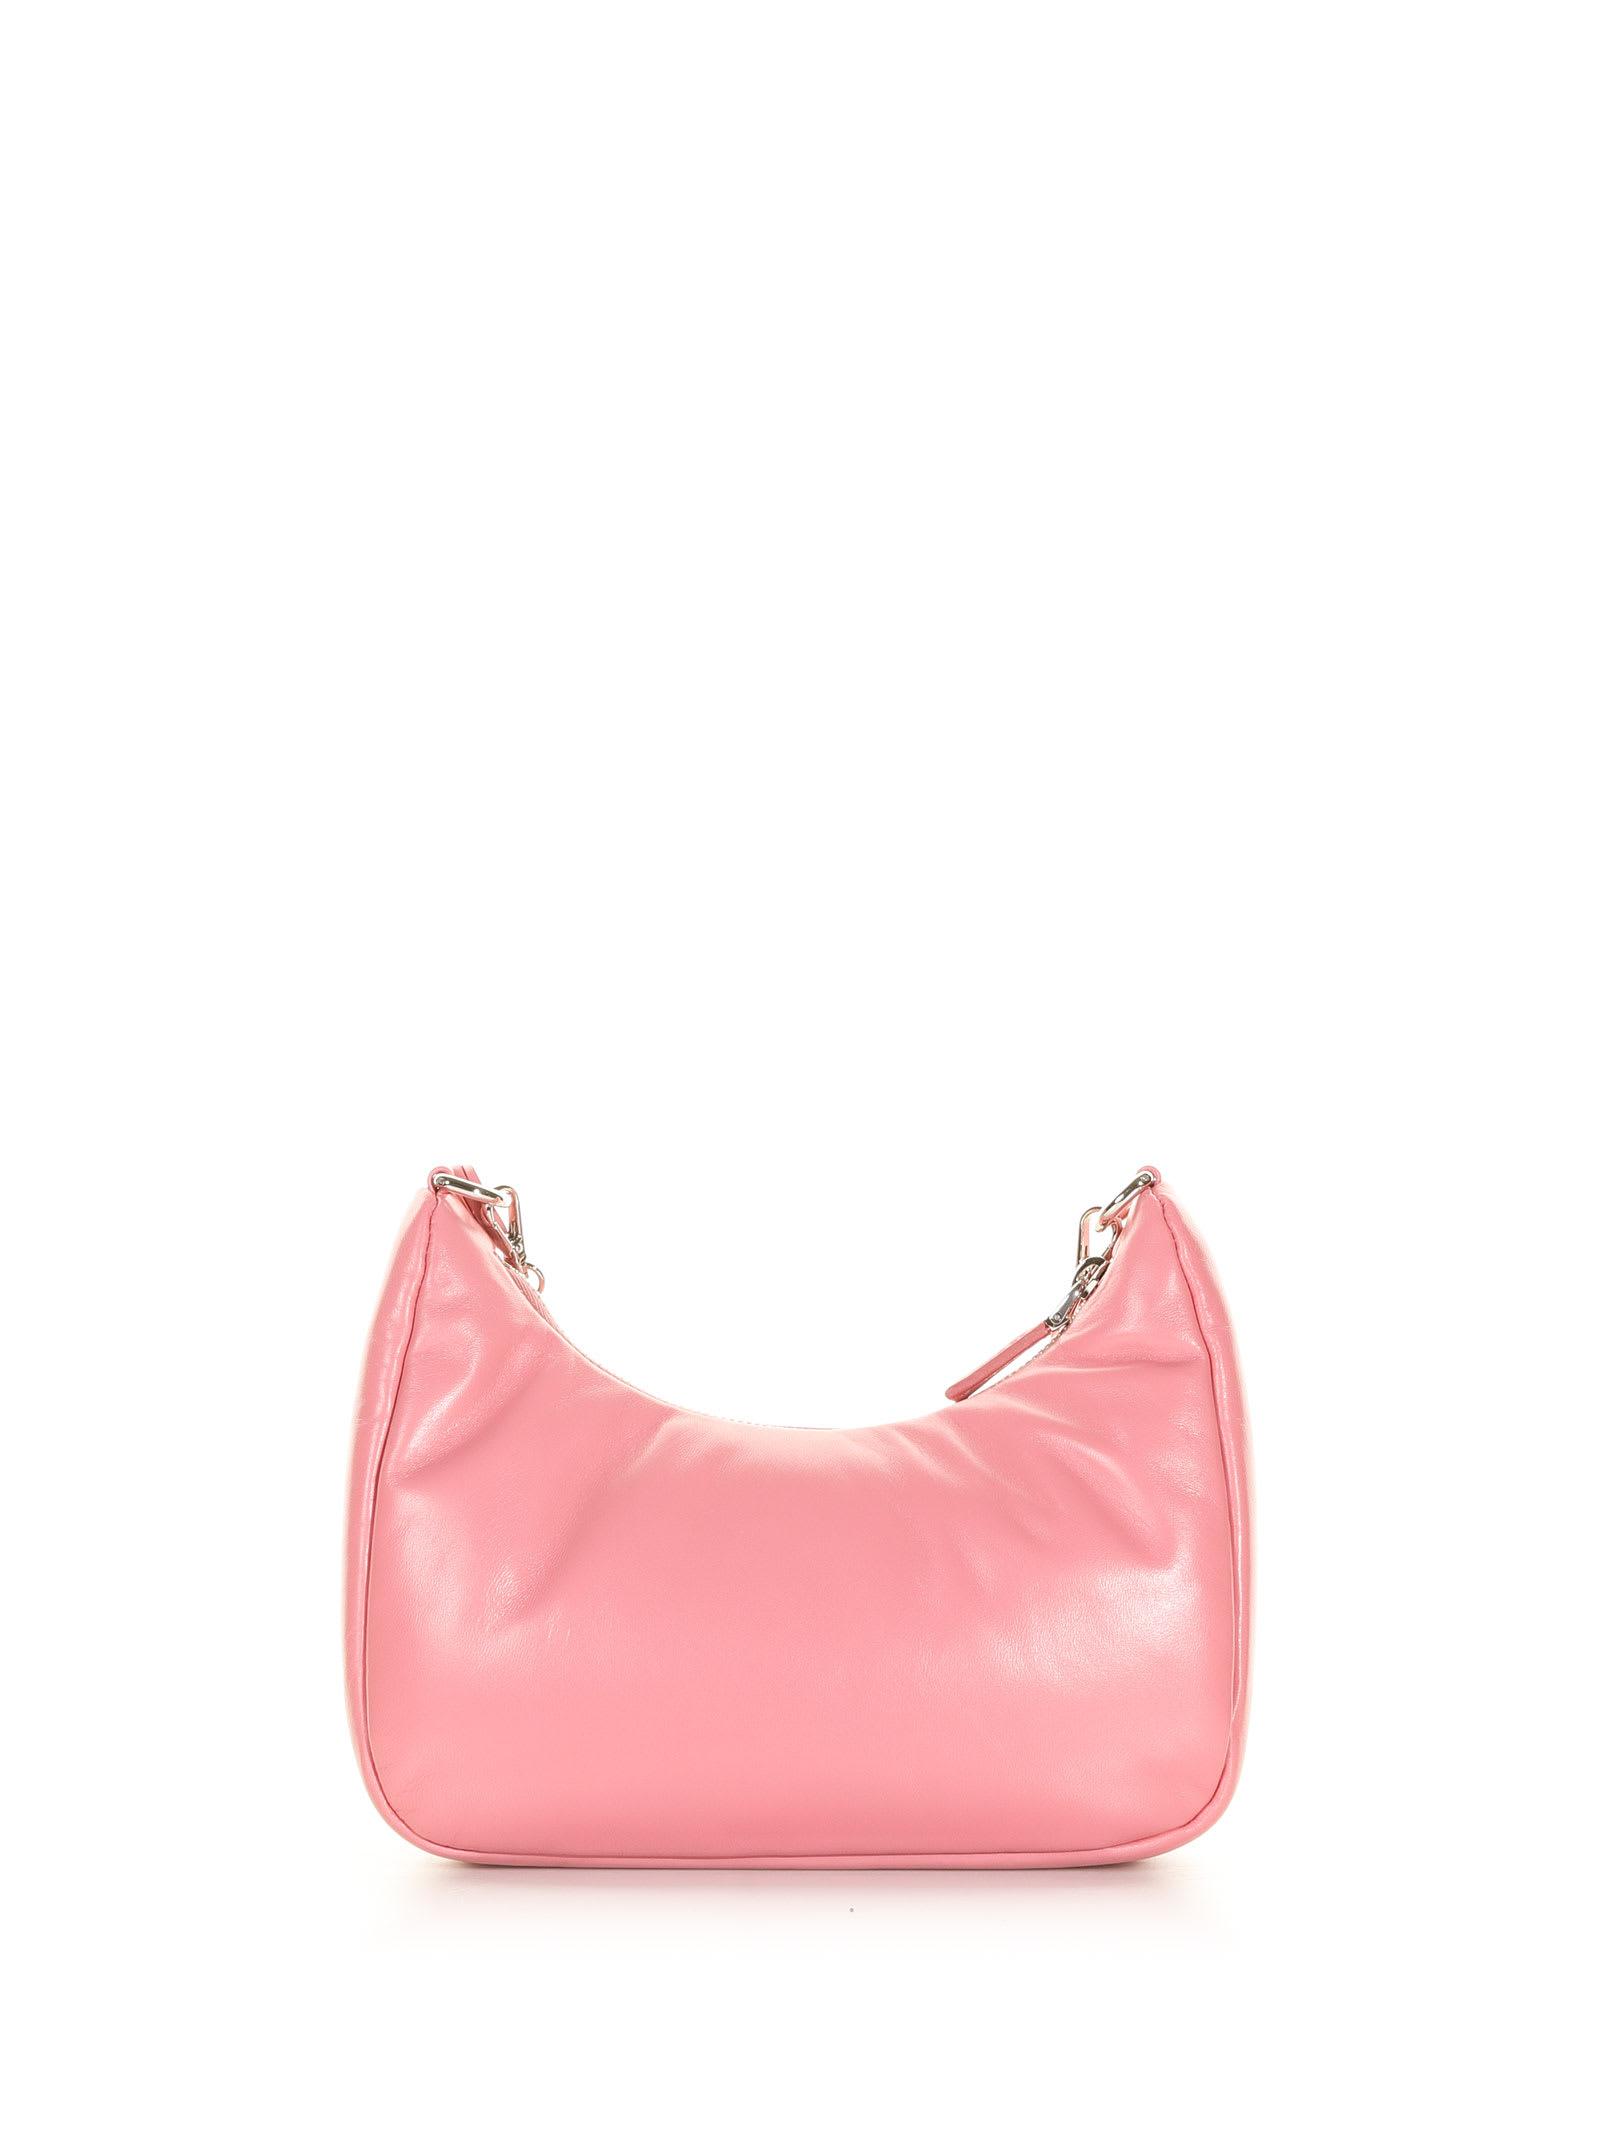 Re Edition 2000 Mini Shoulder Bag in Pink - Prada